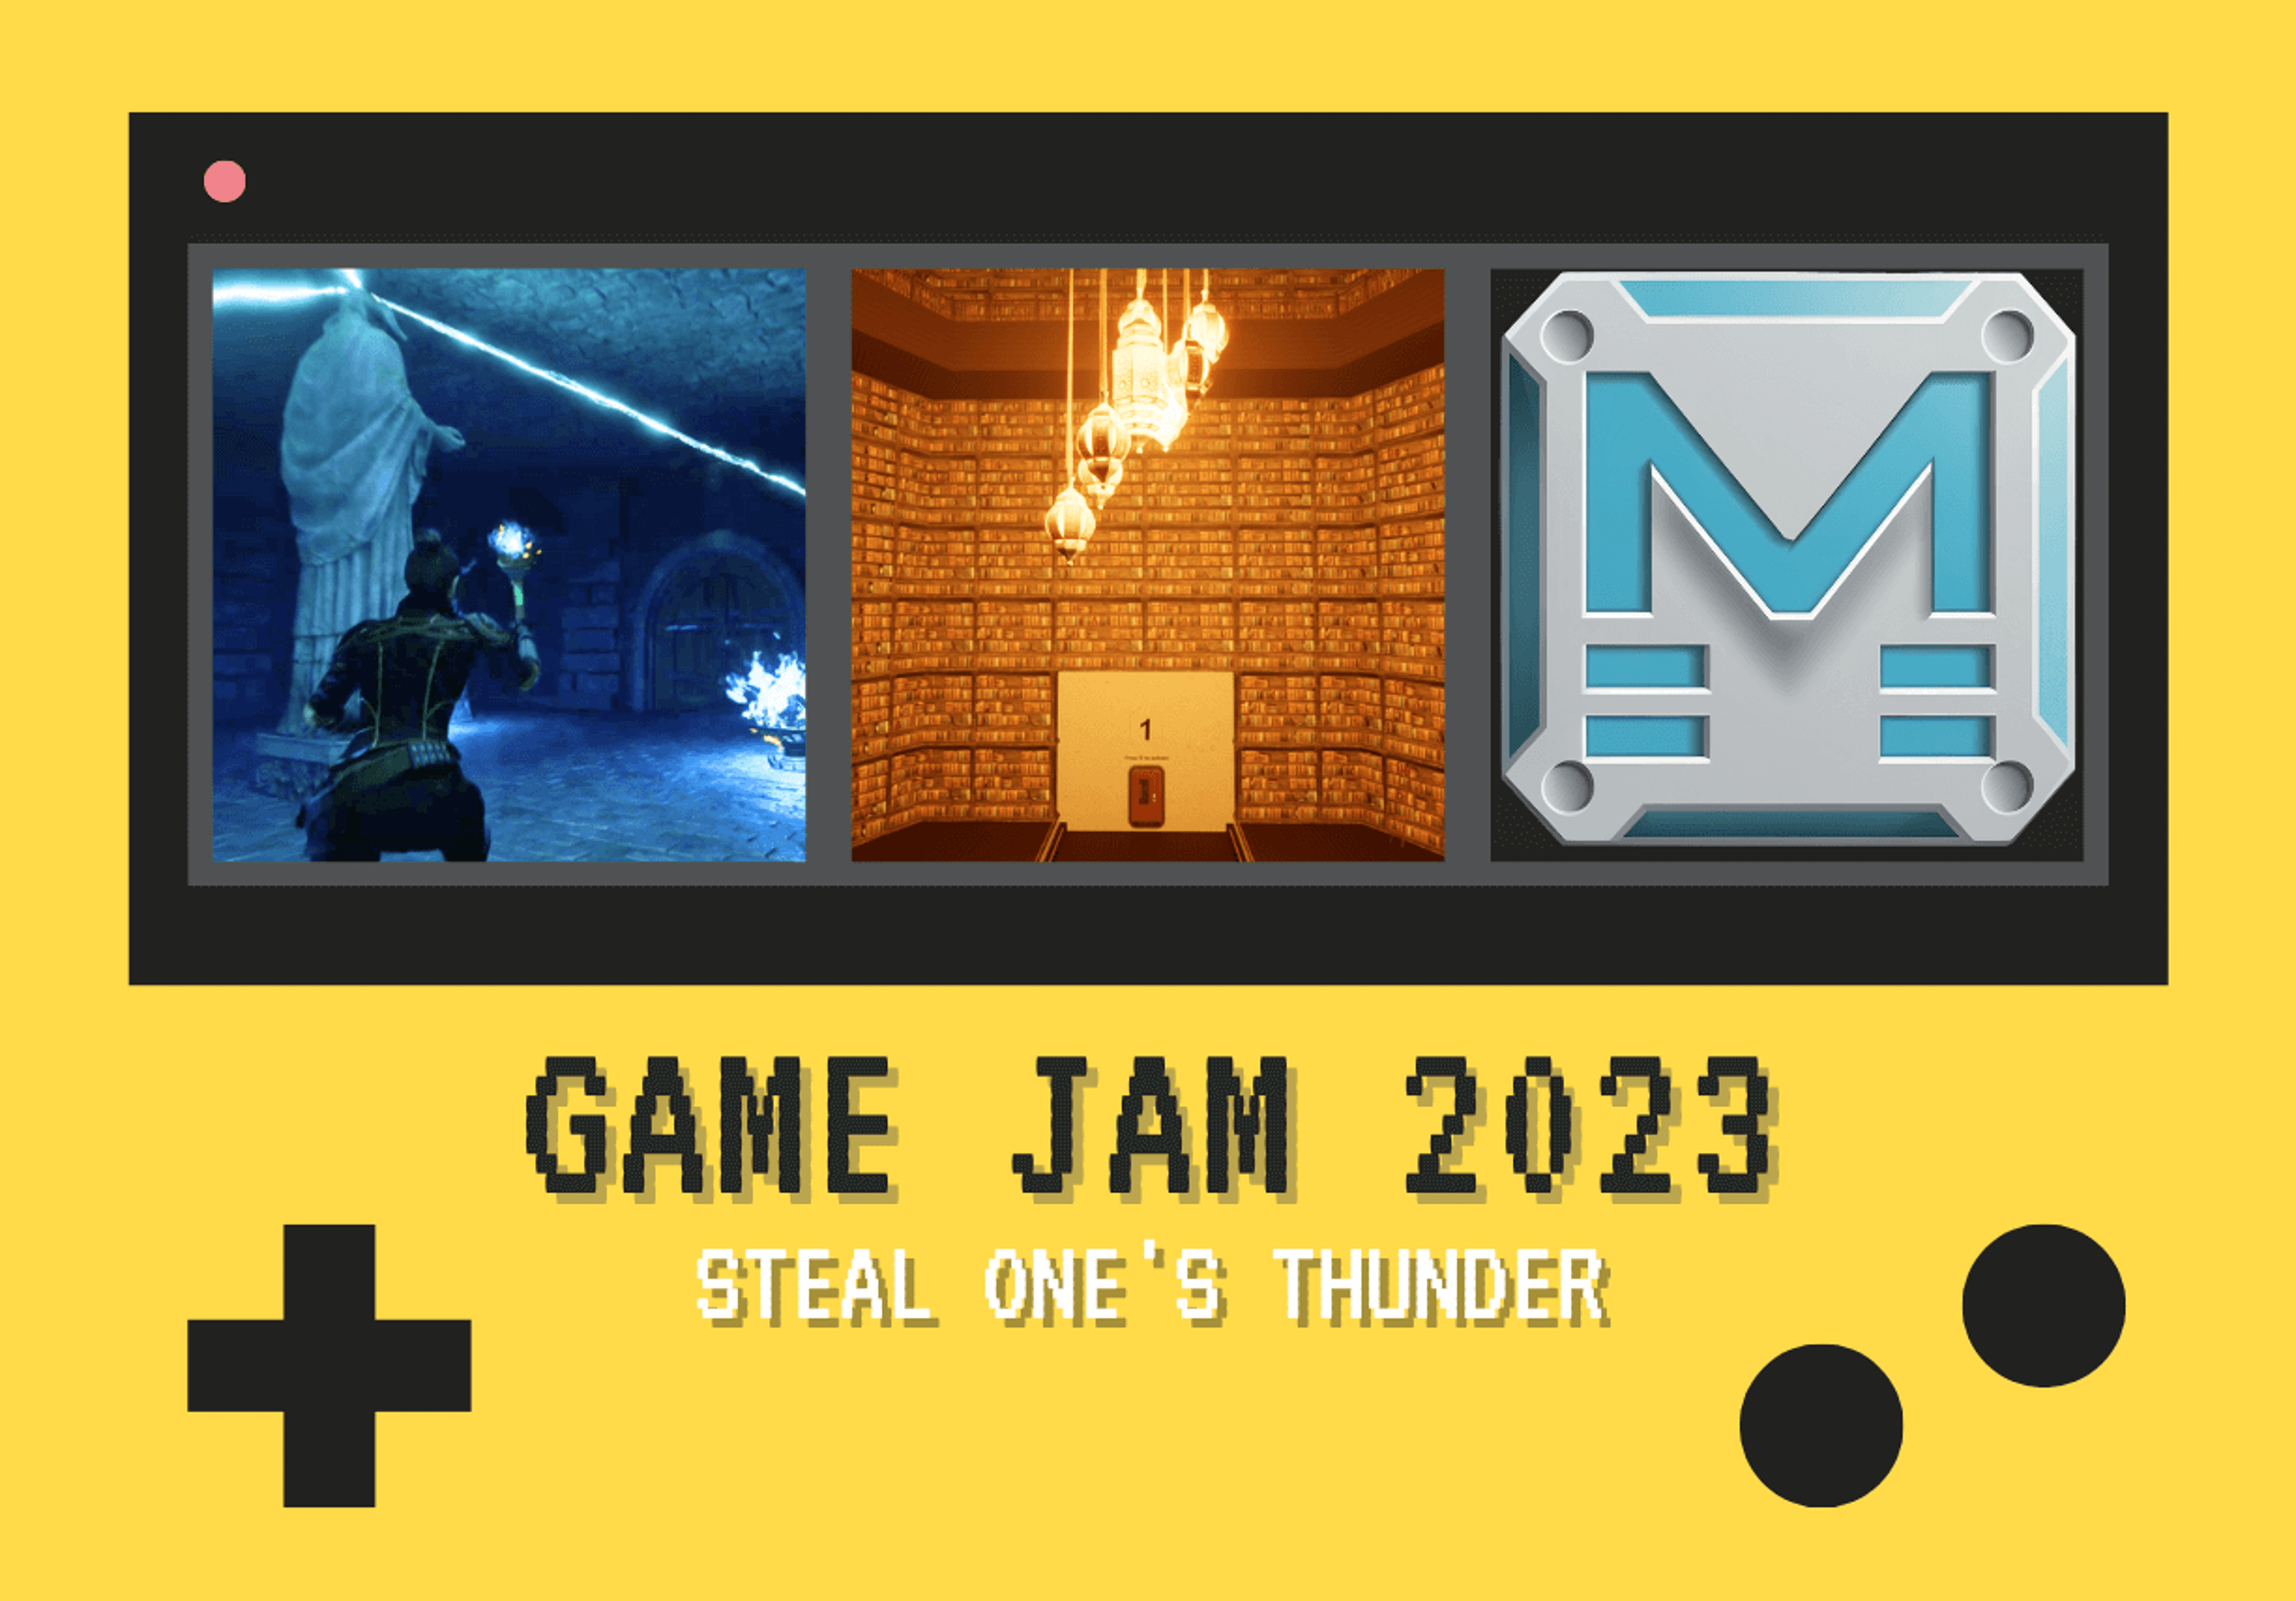  Graphique promotionnel pour le Game Jam 2023 présentant le thème "Steal One's Thunder" avec des images illustratives de conception de jeux.